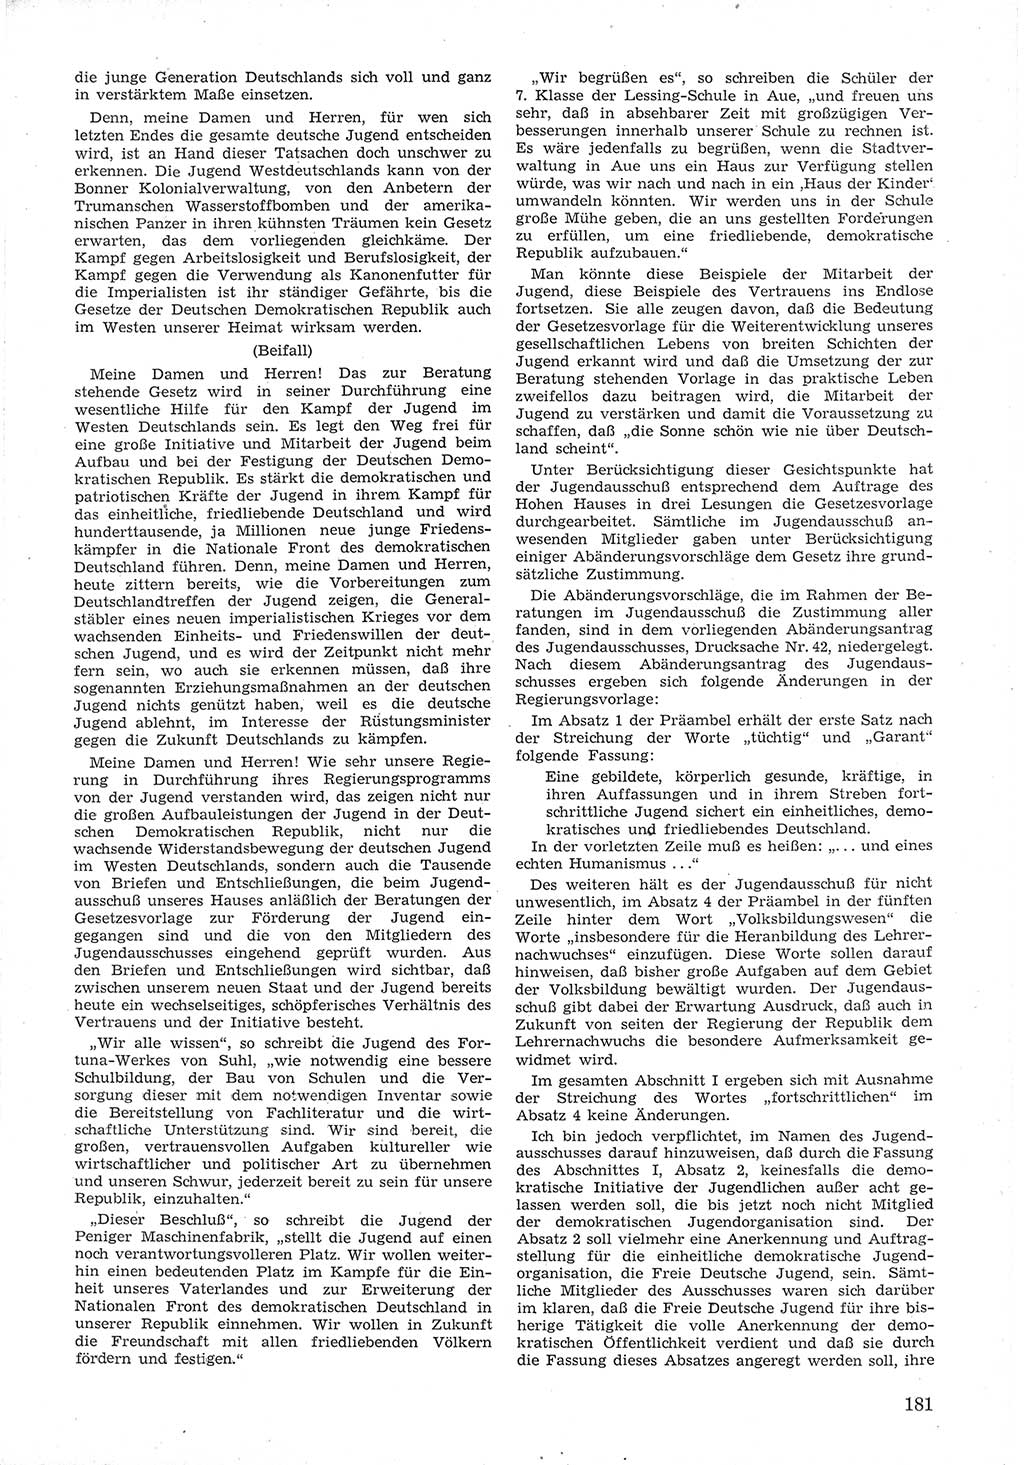 Provisorische Volkskammer (VK) der Deutschen Demokratischen Republik (DDR) 1949-1950, Dokument 193 (Prov. VK DDR 1949-1950, Dok. 193)